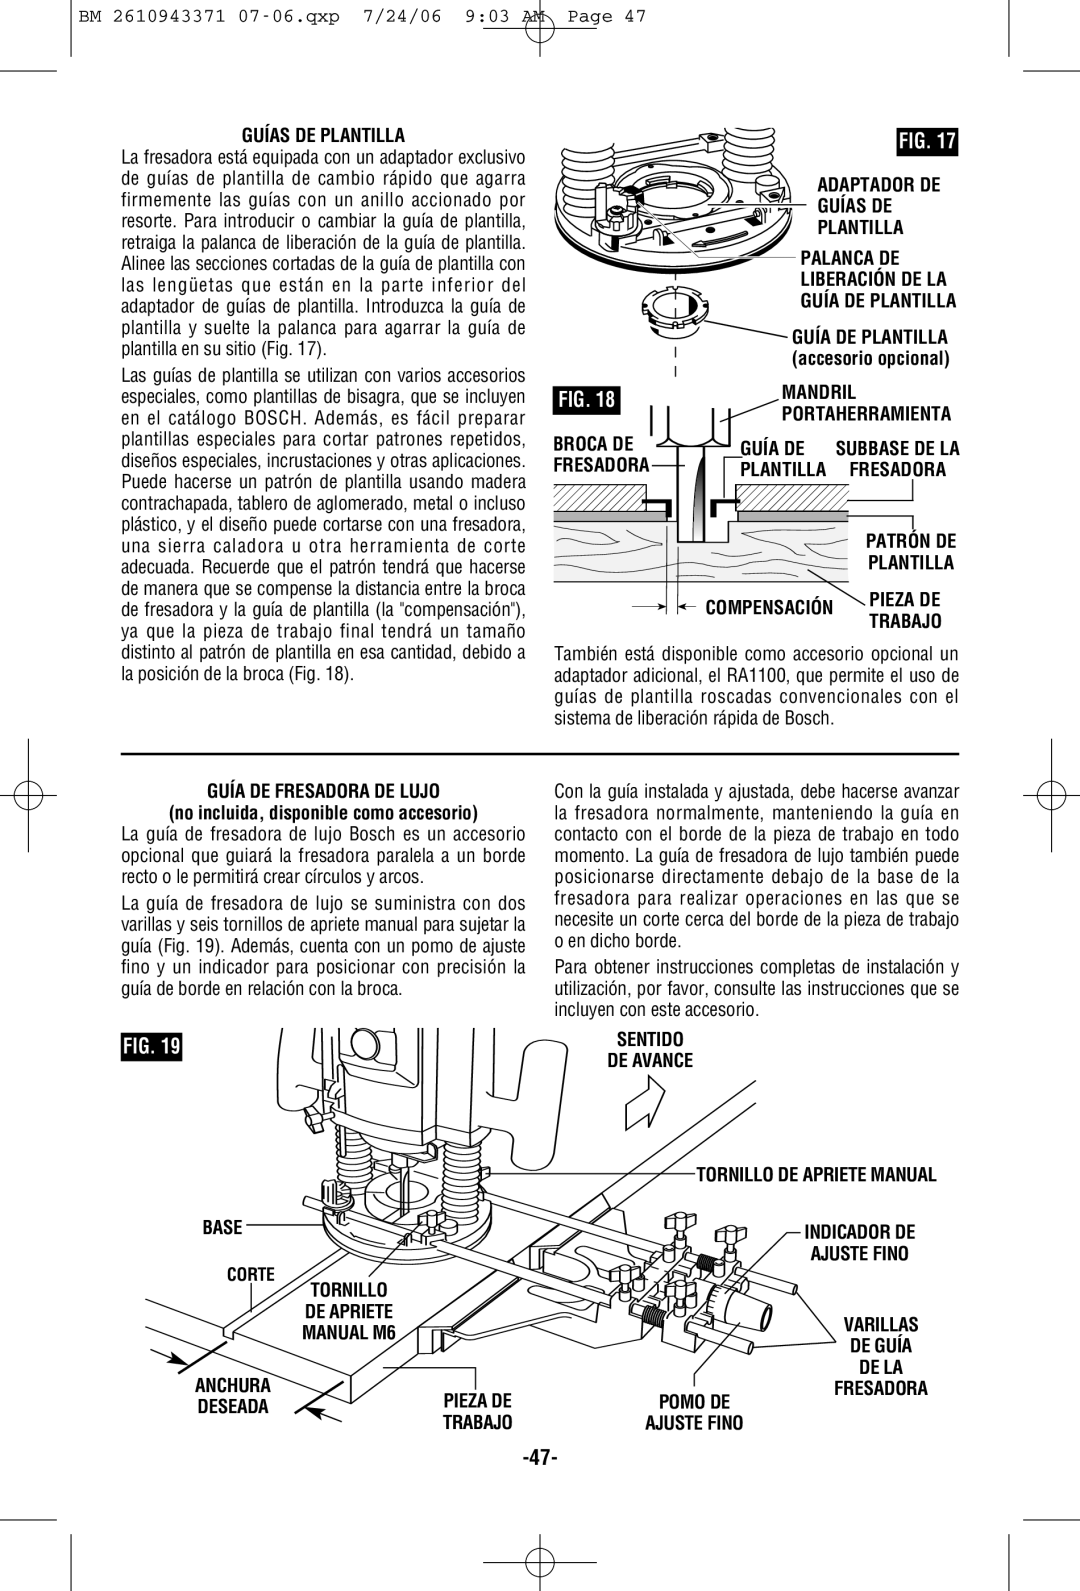 Bosch Power Tools 1613AEVS Adaptador DE Guías DE Plantilla, Guía DE Plantilla, Broca DE, Patrón DE Plantilla, Pieza DE 